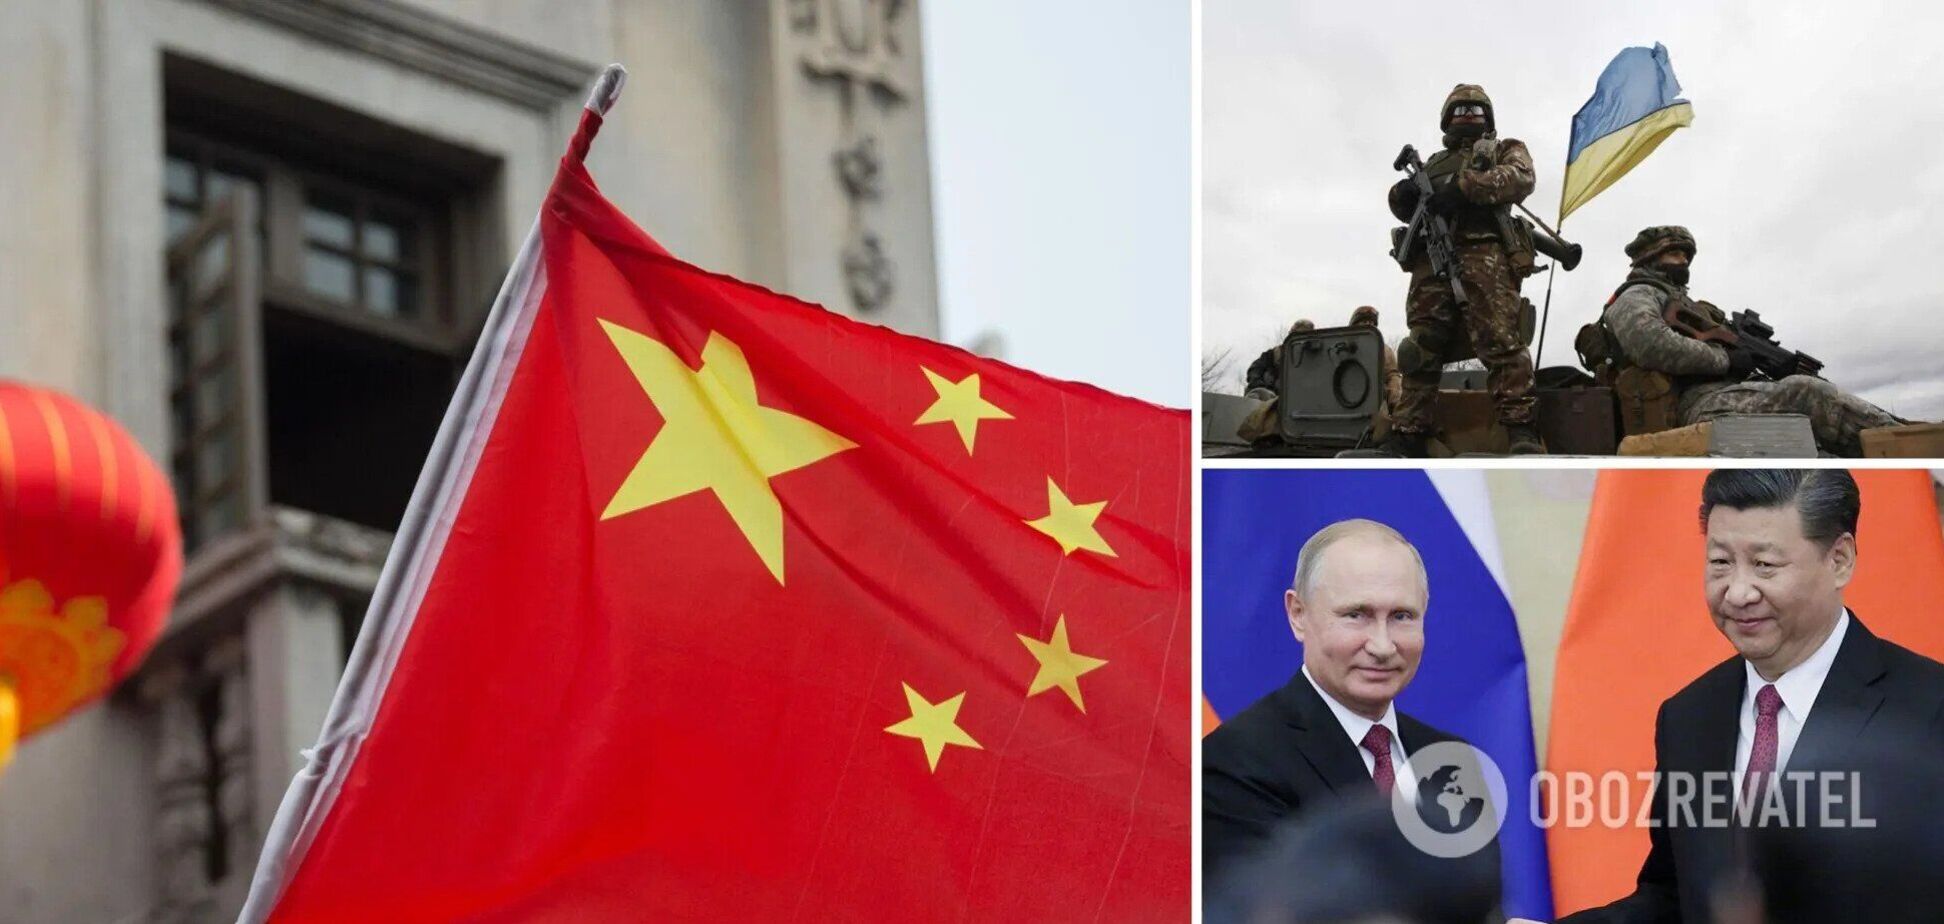 'Позиция не изменилась': Китай заявил, что не признает Россию агрессором по отношению к Украине, хотя поддержал резолюцию ООН